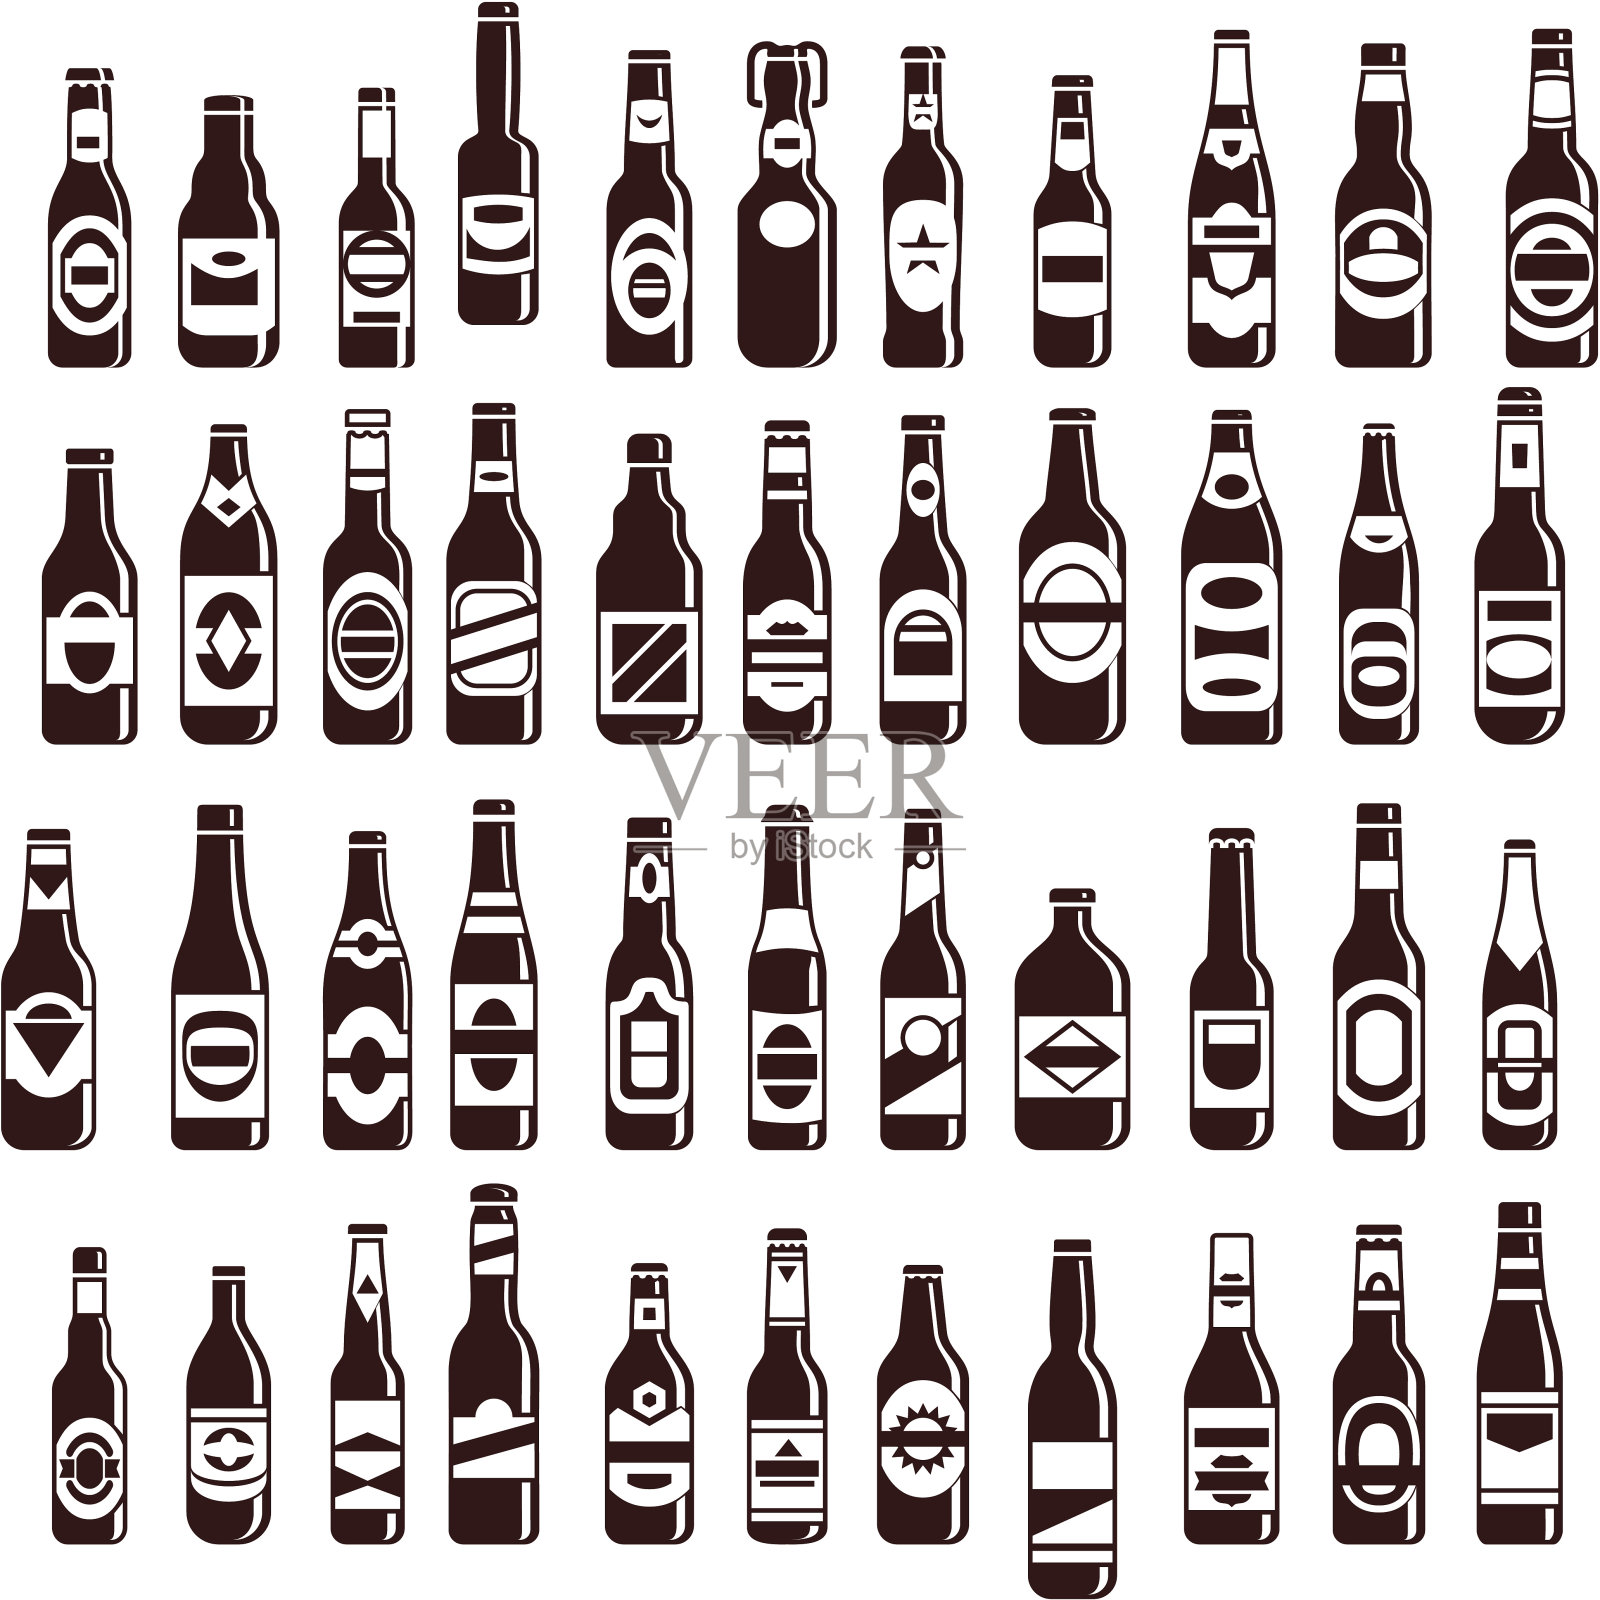 四排不同大小的啤酒瓶插画图片素材